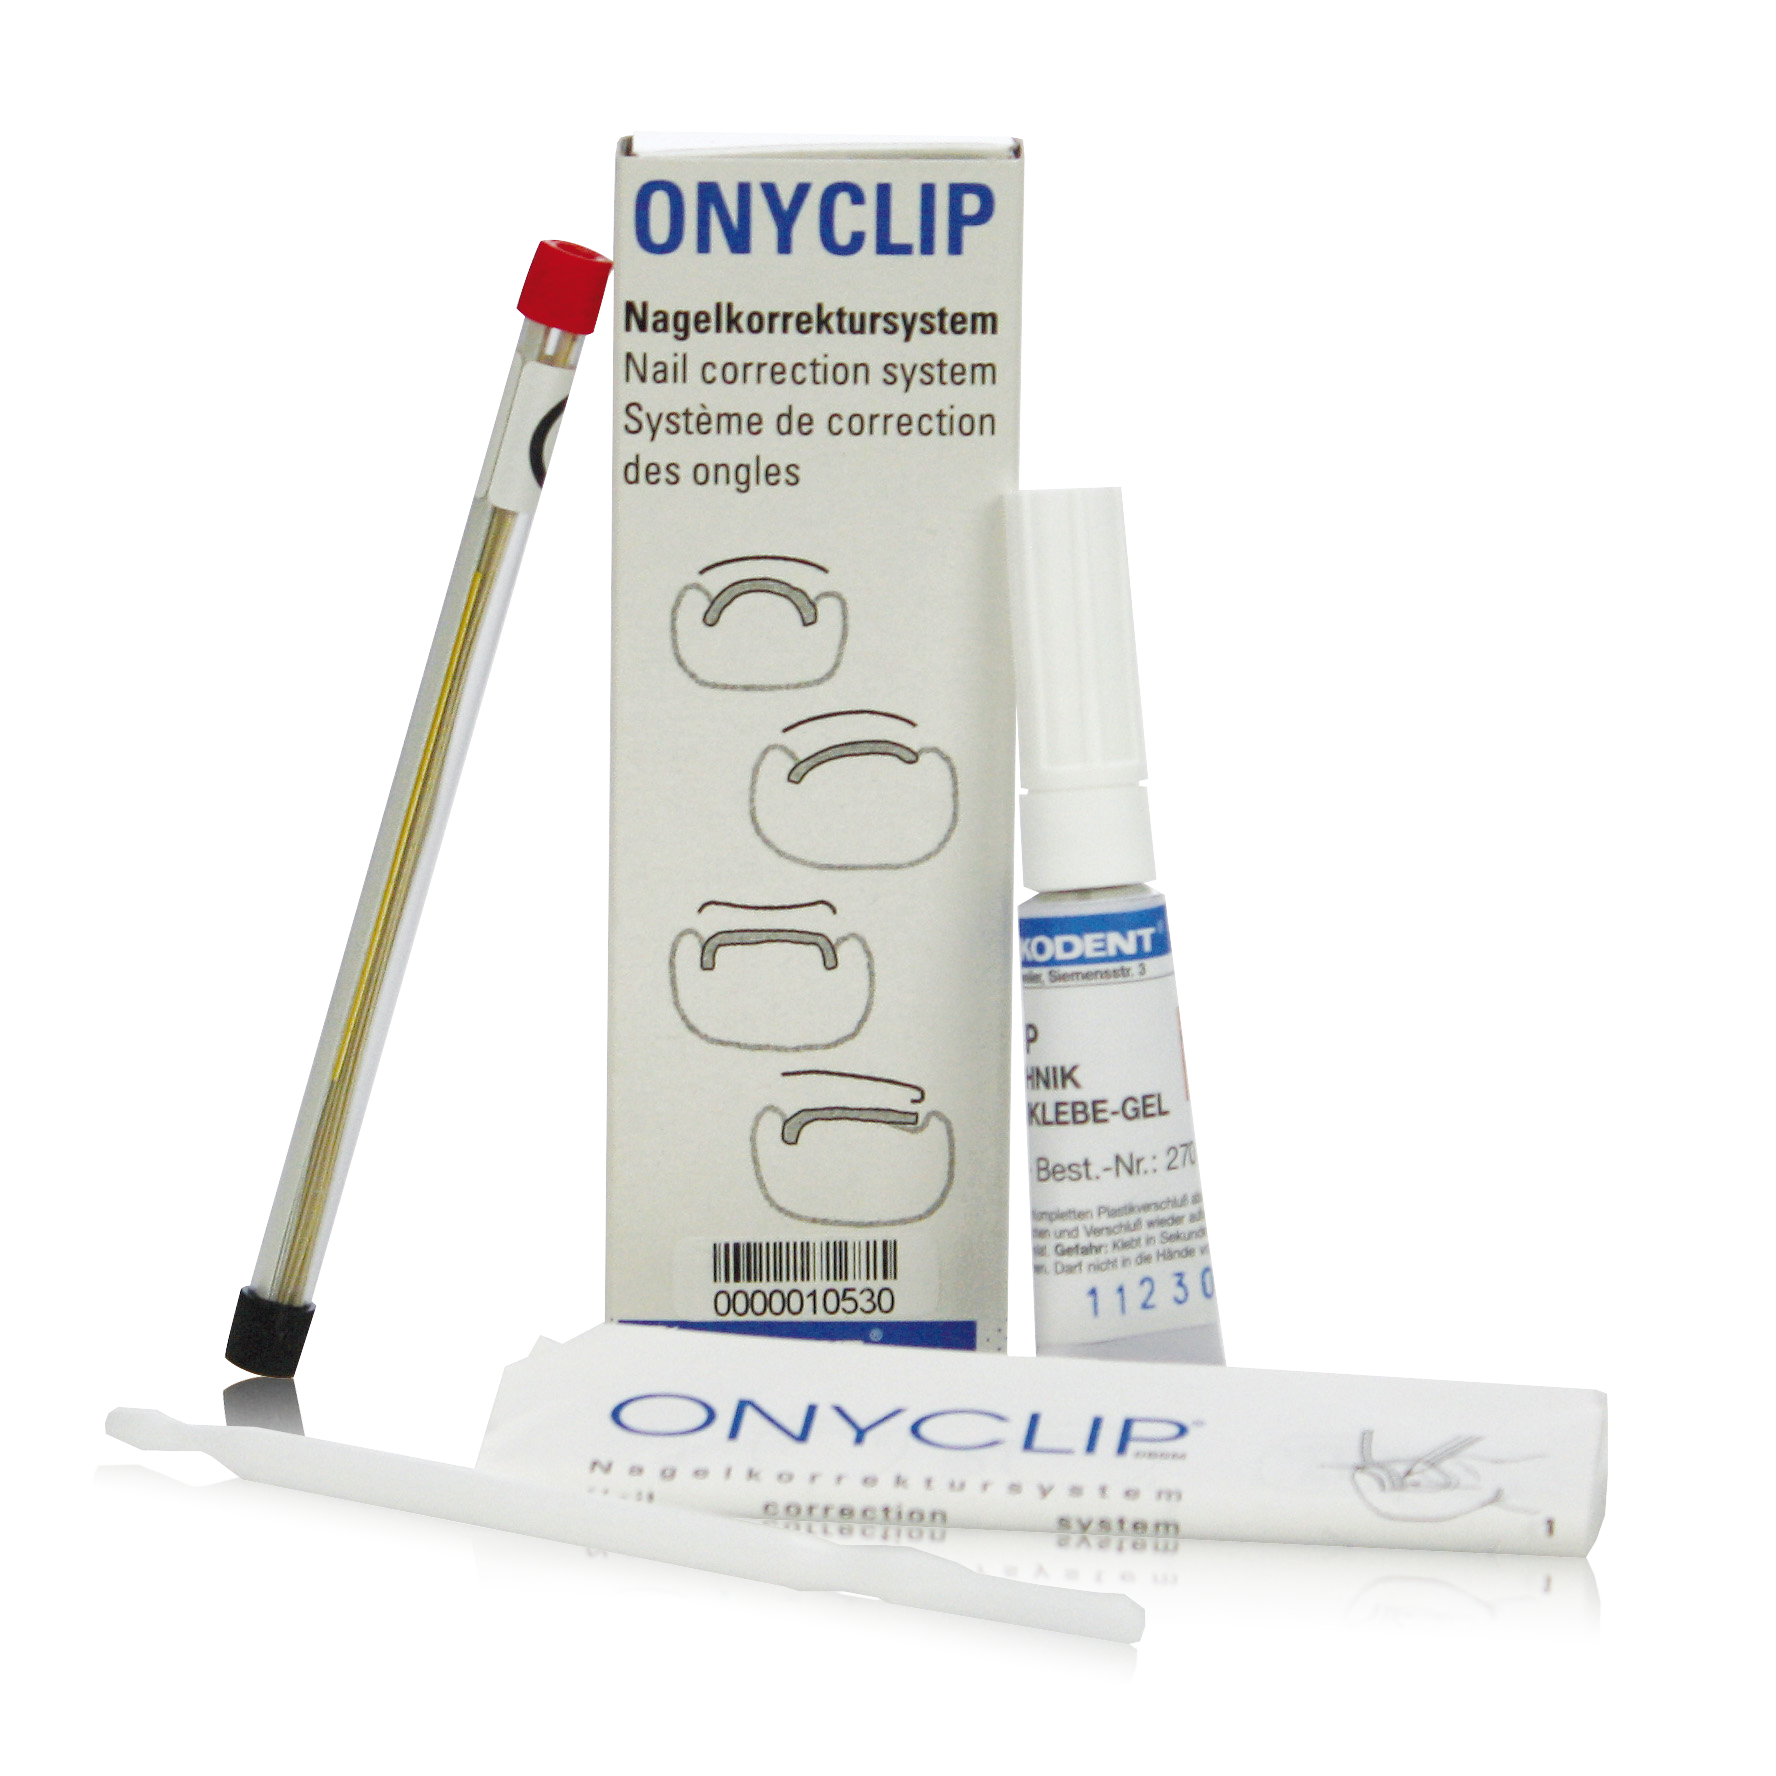 onyclip-nagelkorrektursystem-_10530